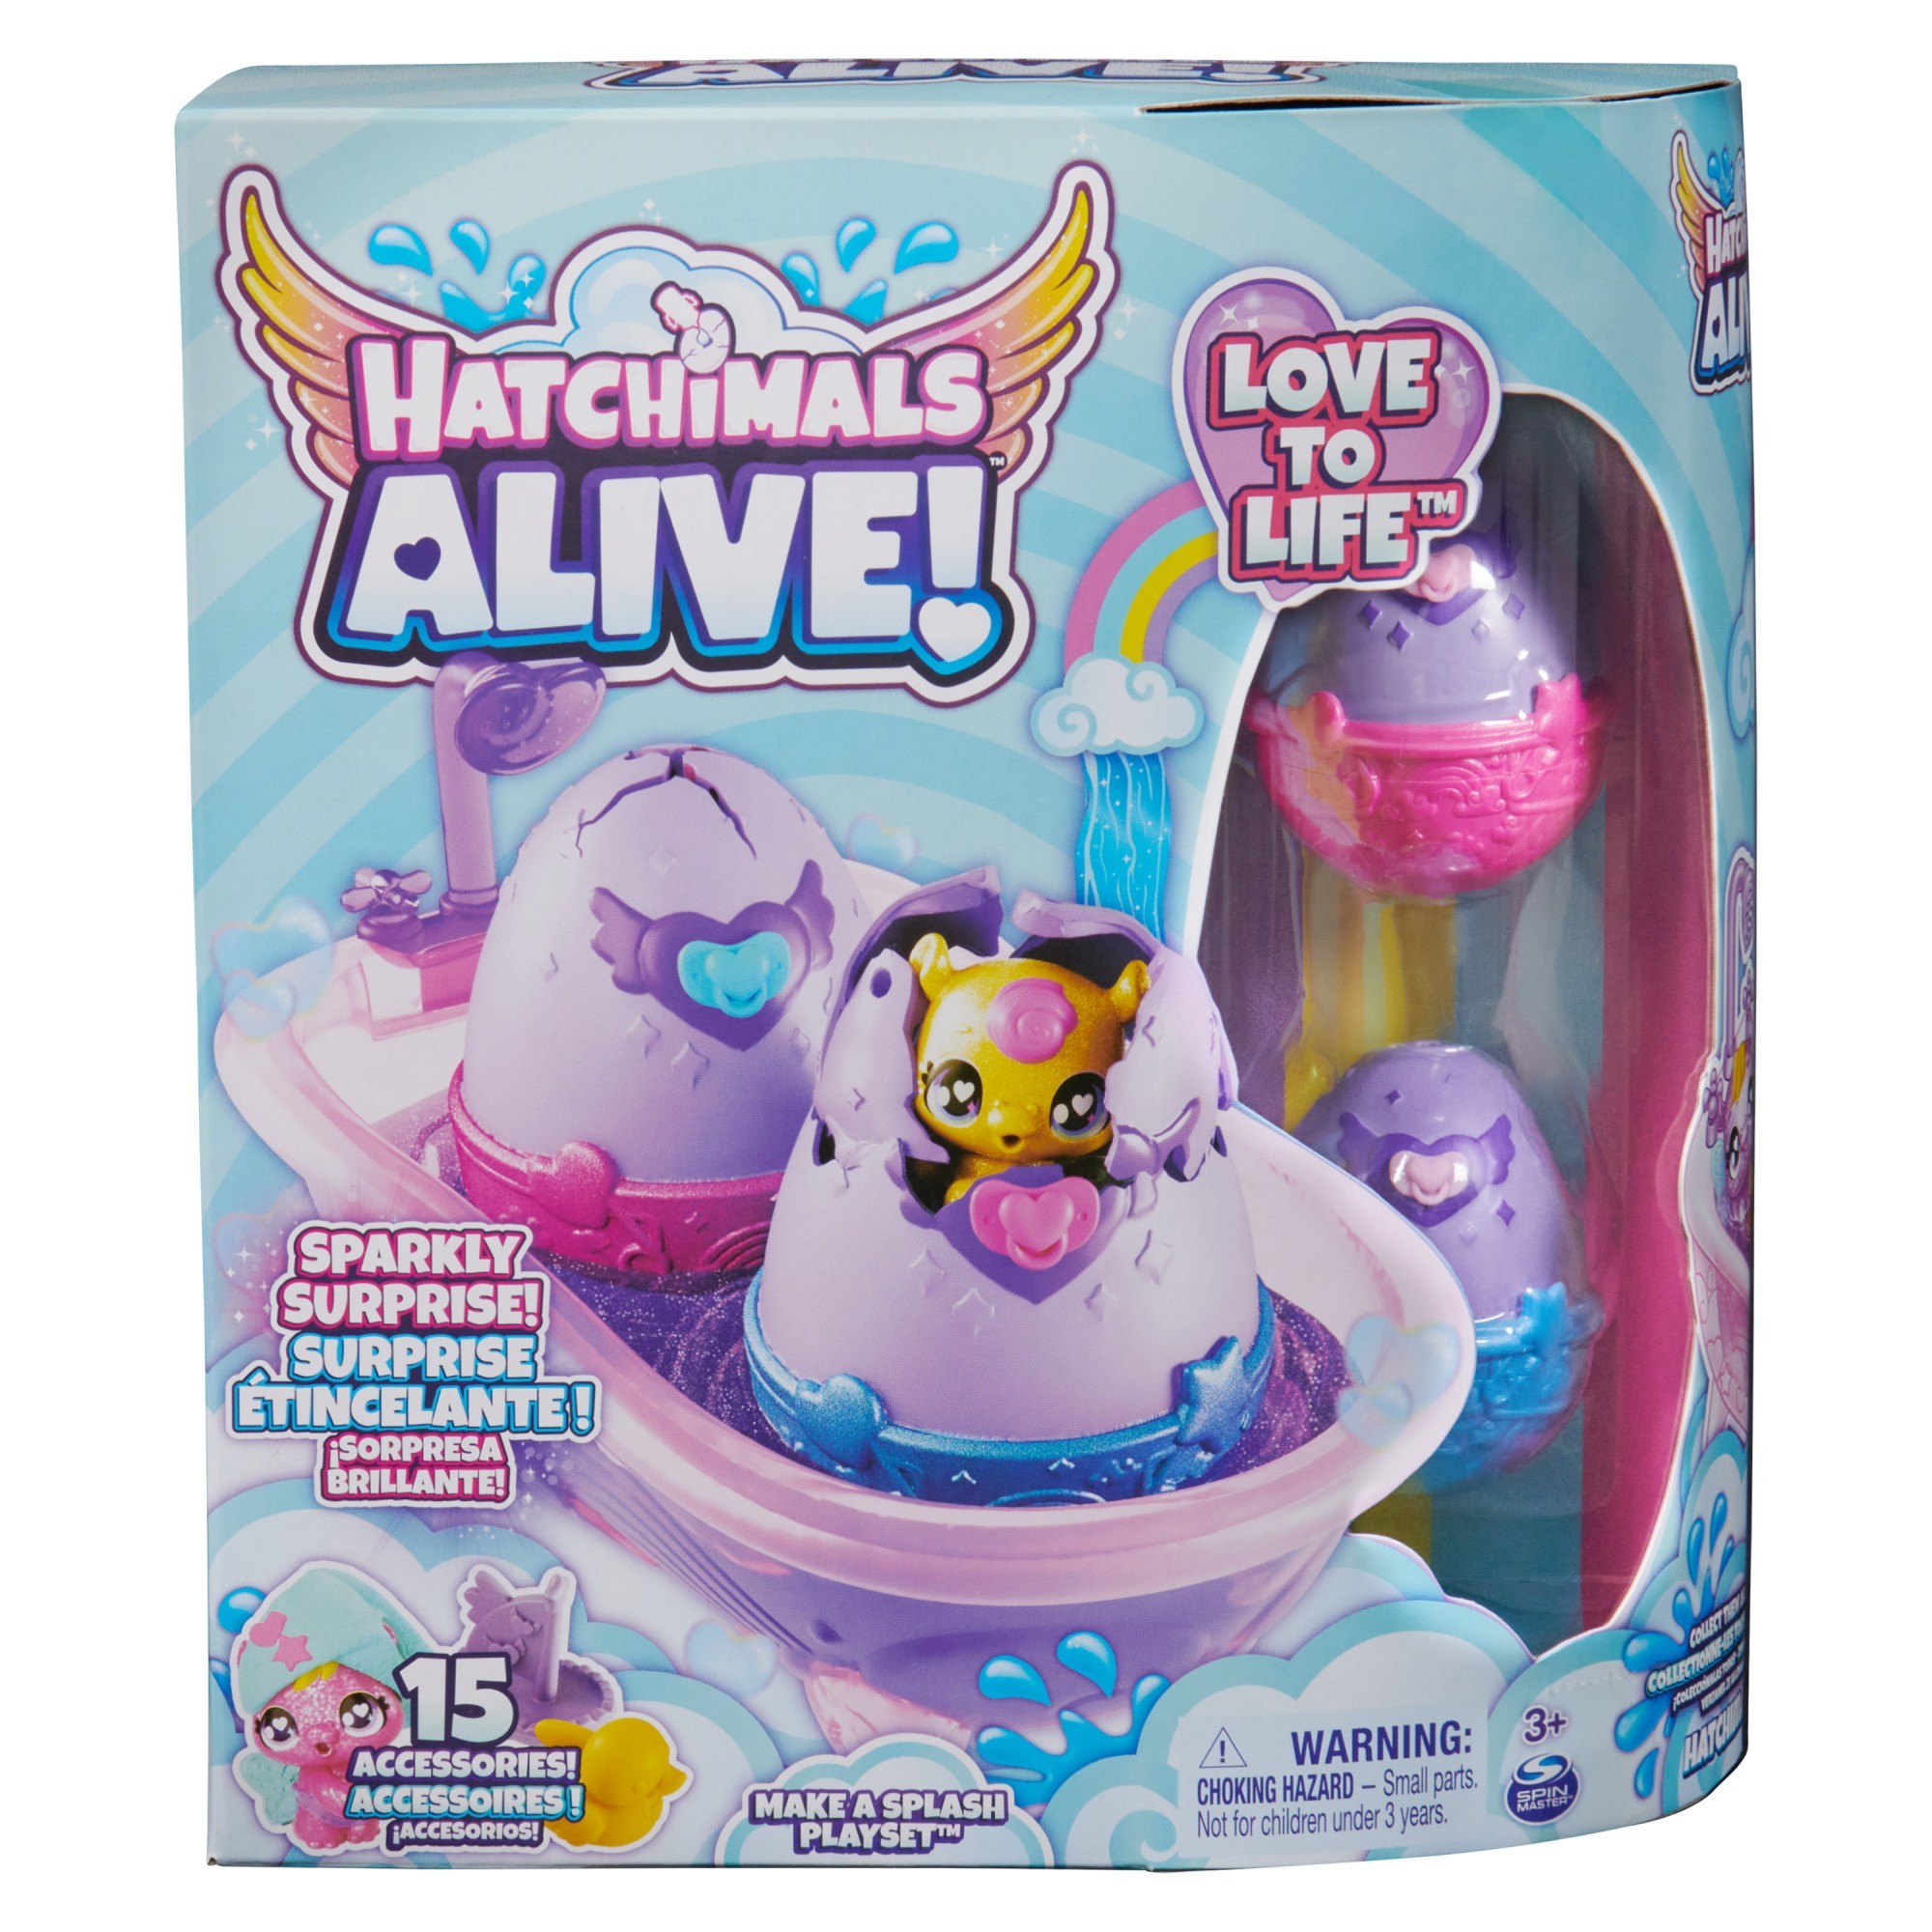 Hatchimals Alive